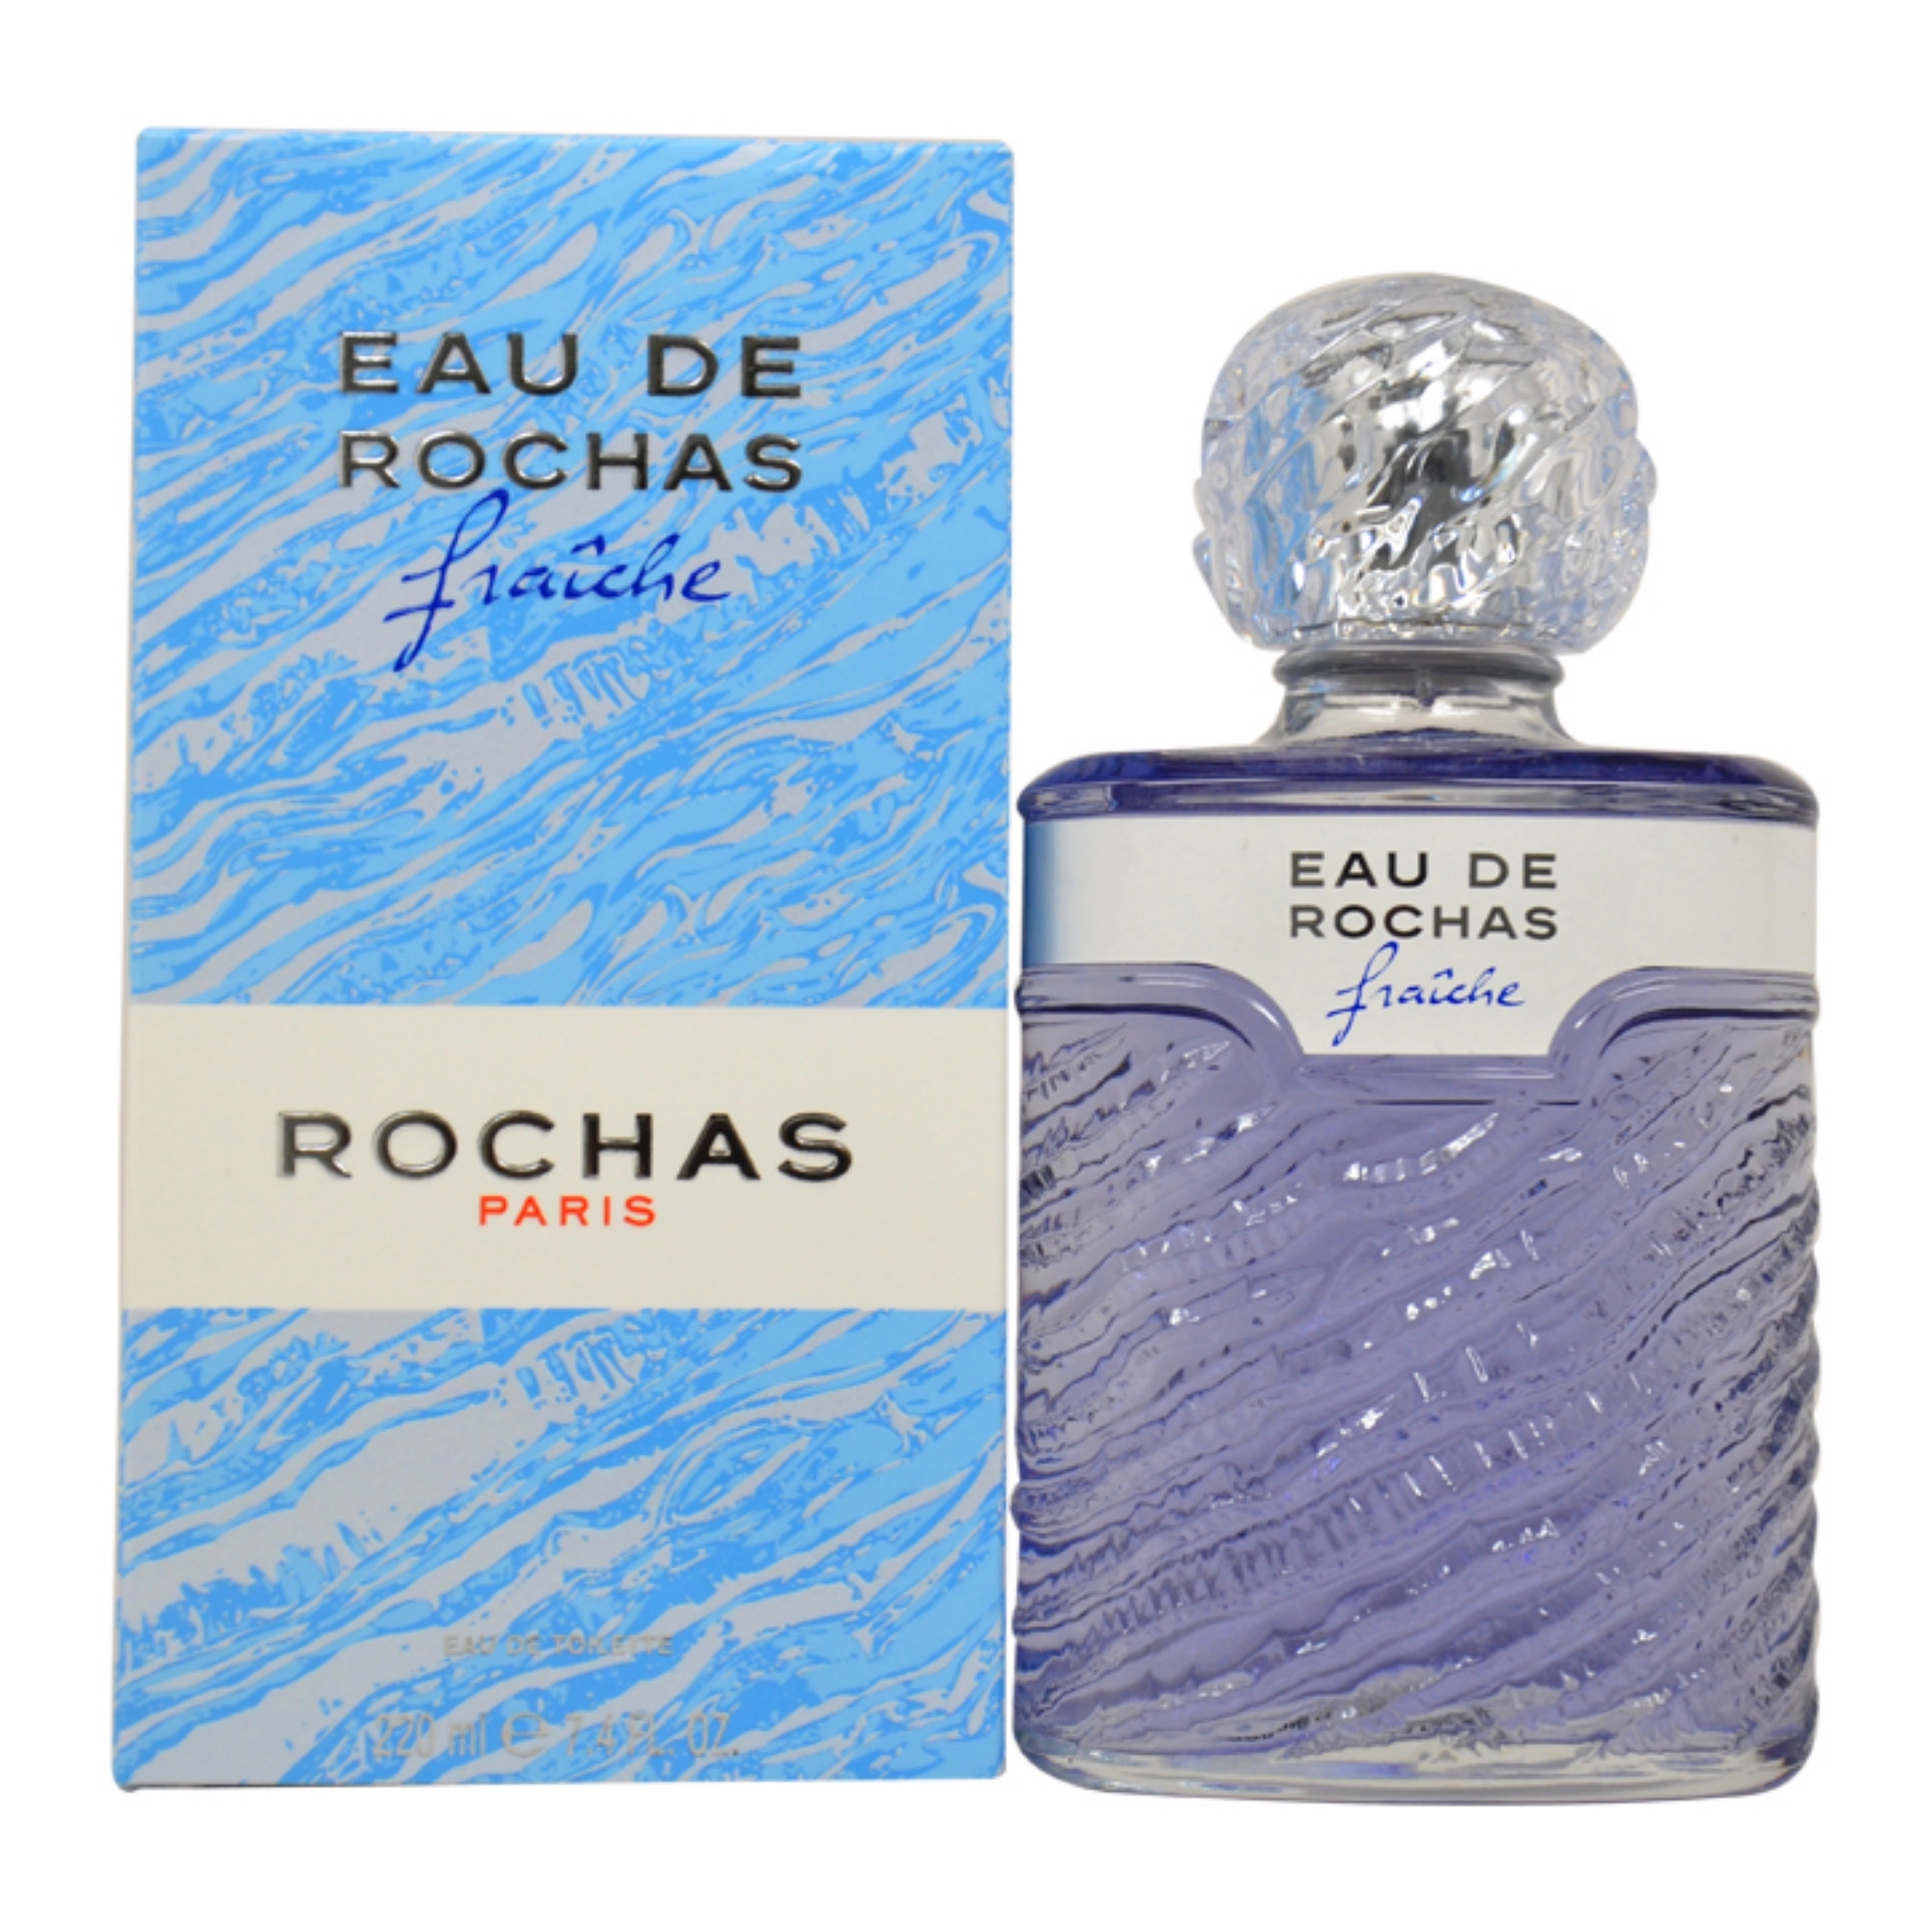 EAU DE ROCHAS FRAICHE by Rochas for Women - 7.4 oz EDT Splash